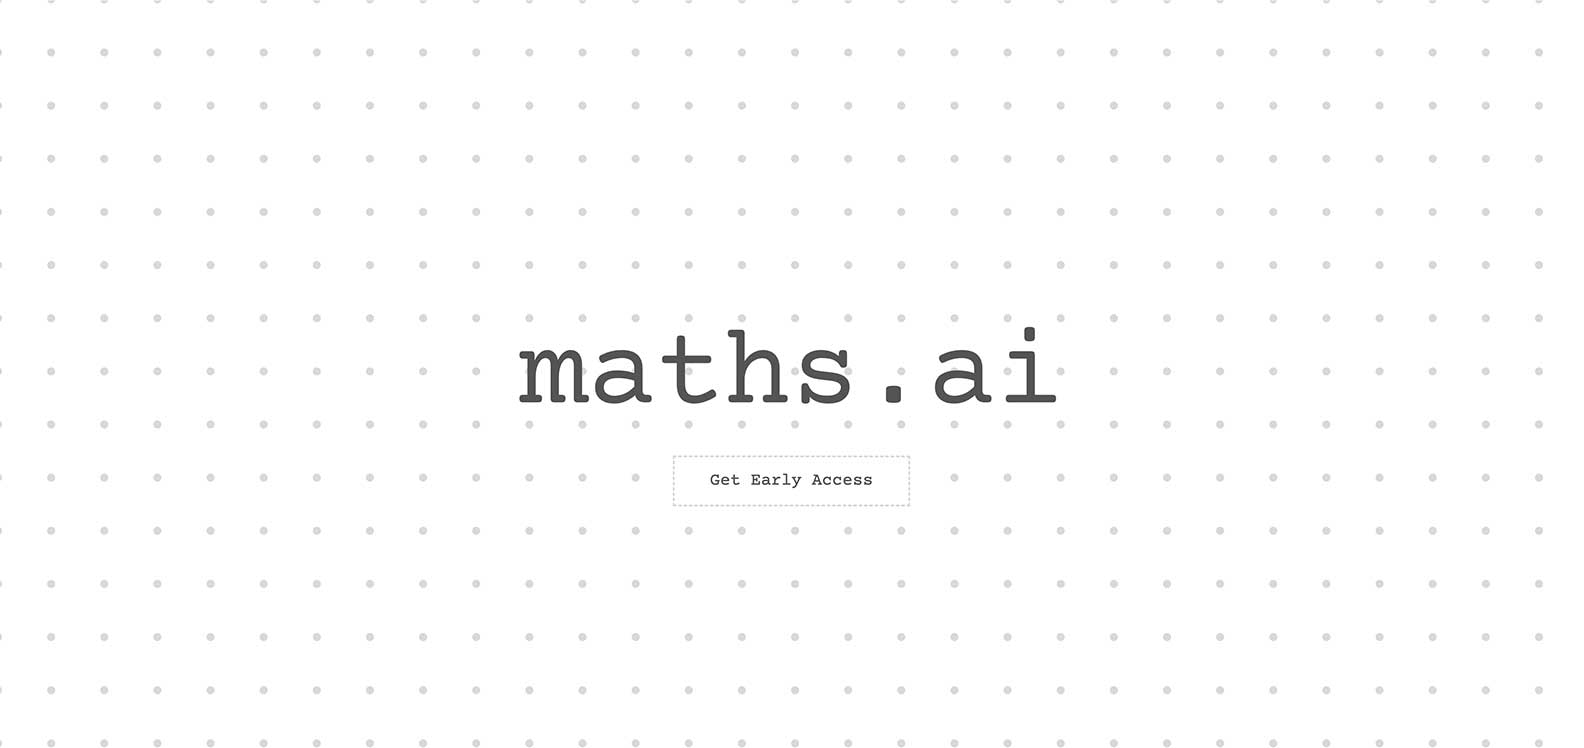 Post: Maths.AI